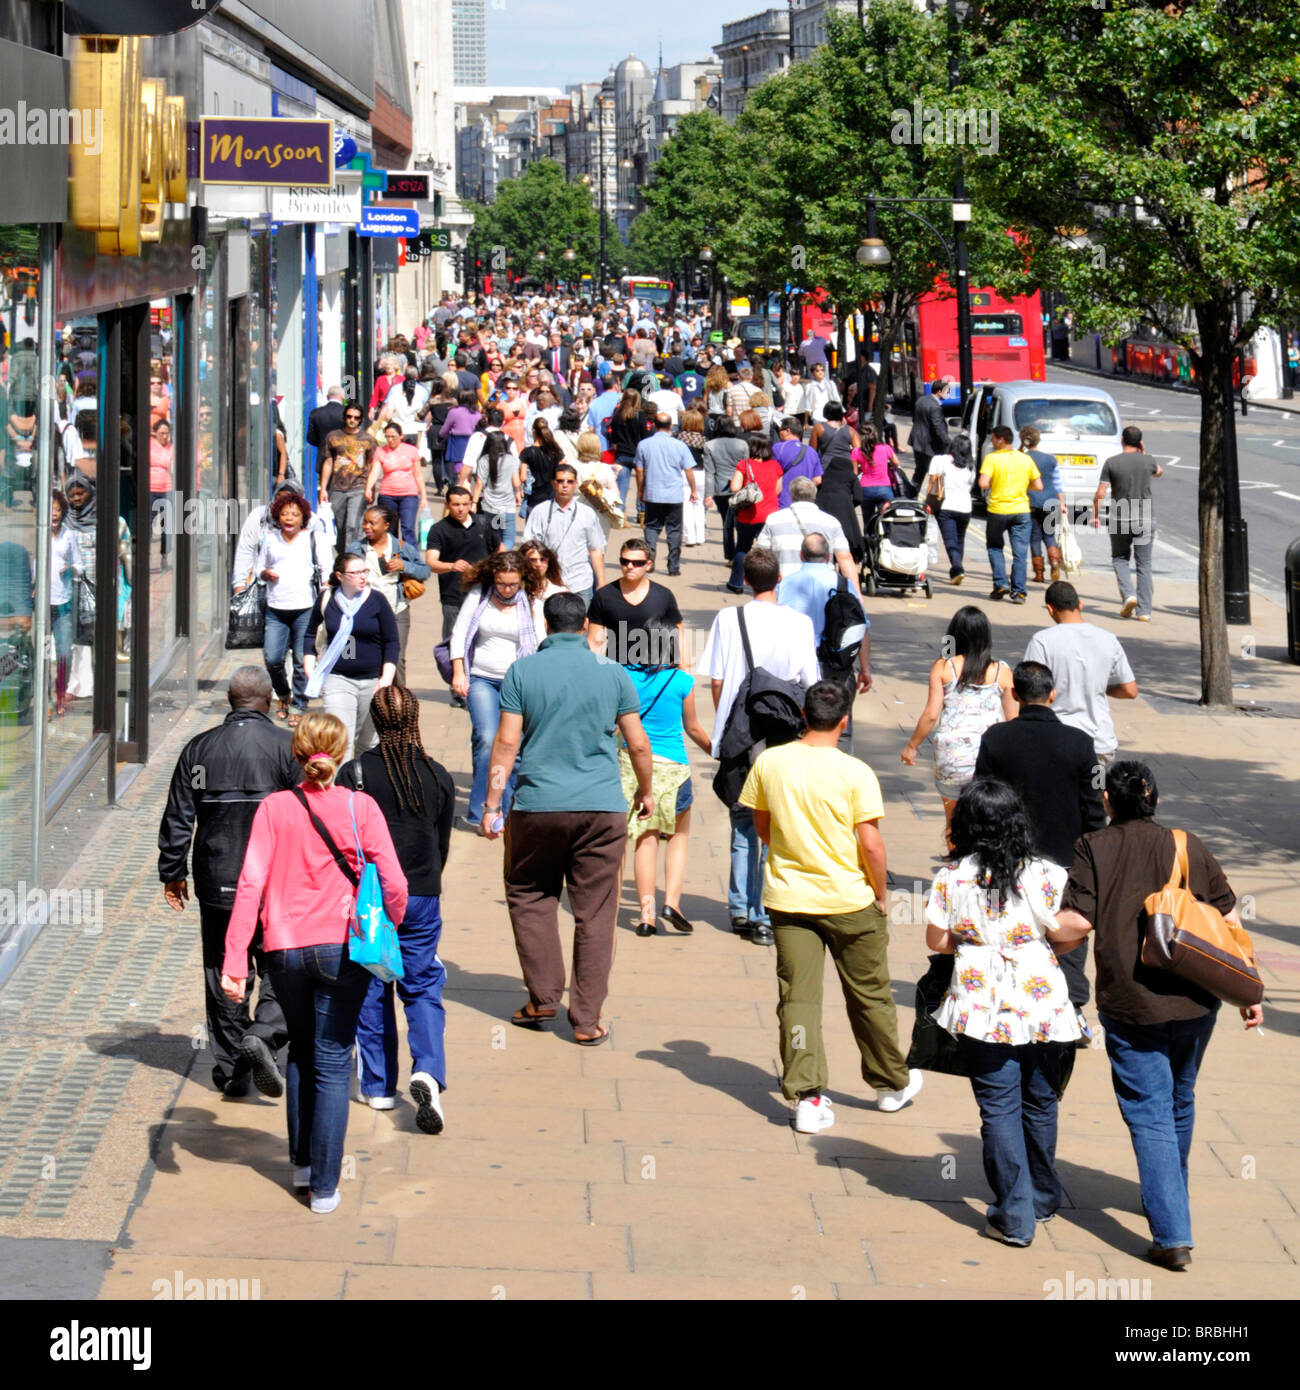 Une foule de clients et de touristes ont vue d'en haut en marchant sur la rue animée Oxford Street pavé célèbre rue commerçante West End et magasins le jour d'été Londres Royaume-Uni Banque D'Images